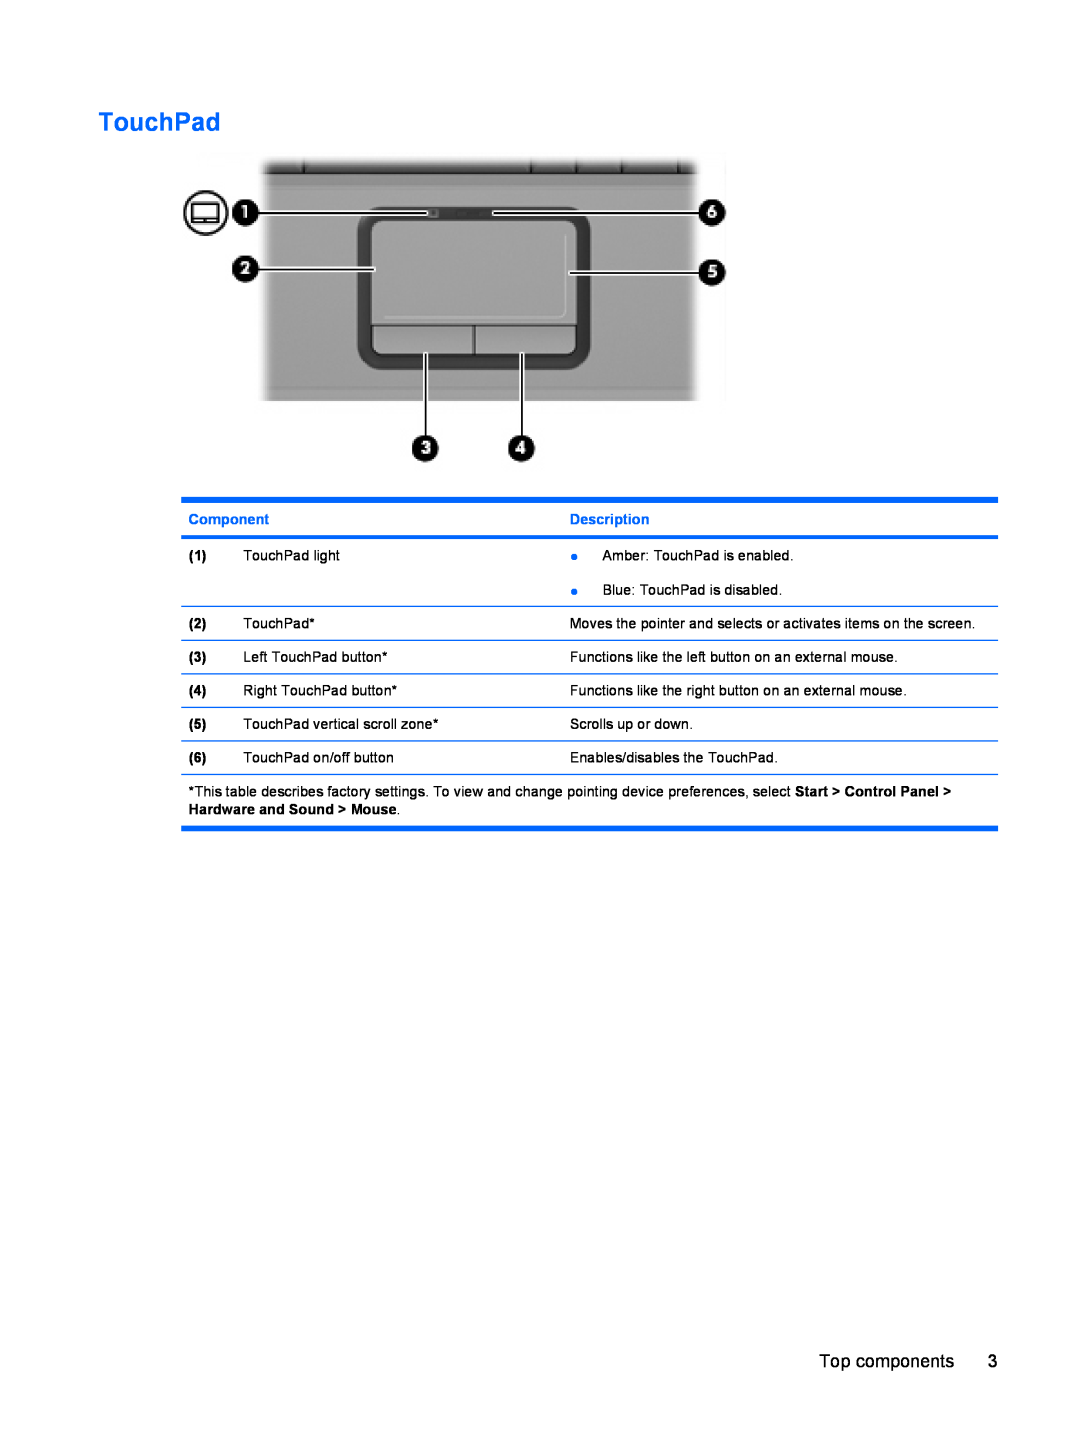 HP C749TU, C732XX, C753TU, C757LA, C754CA, C751NR TouchPad, Top components, Component, Description, Hardware and Sound Mouse 